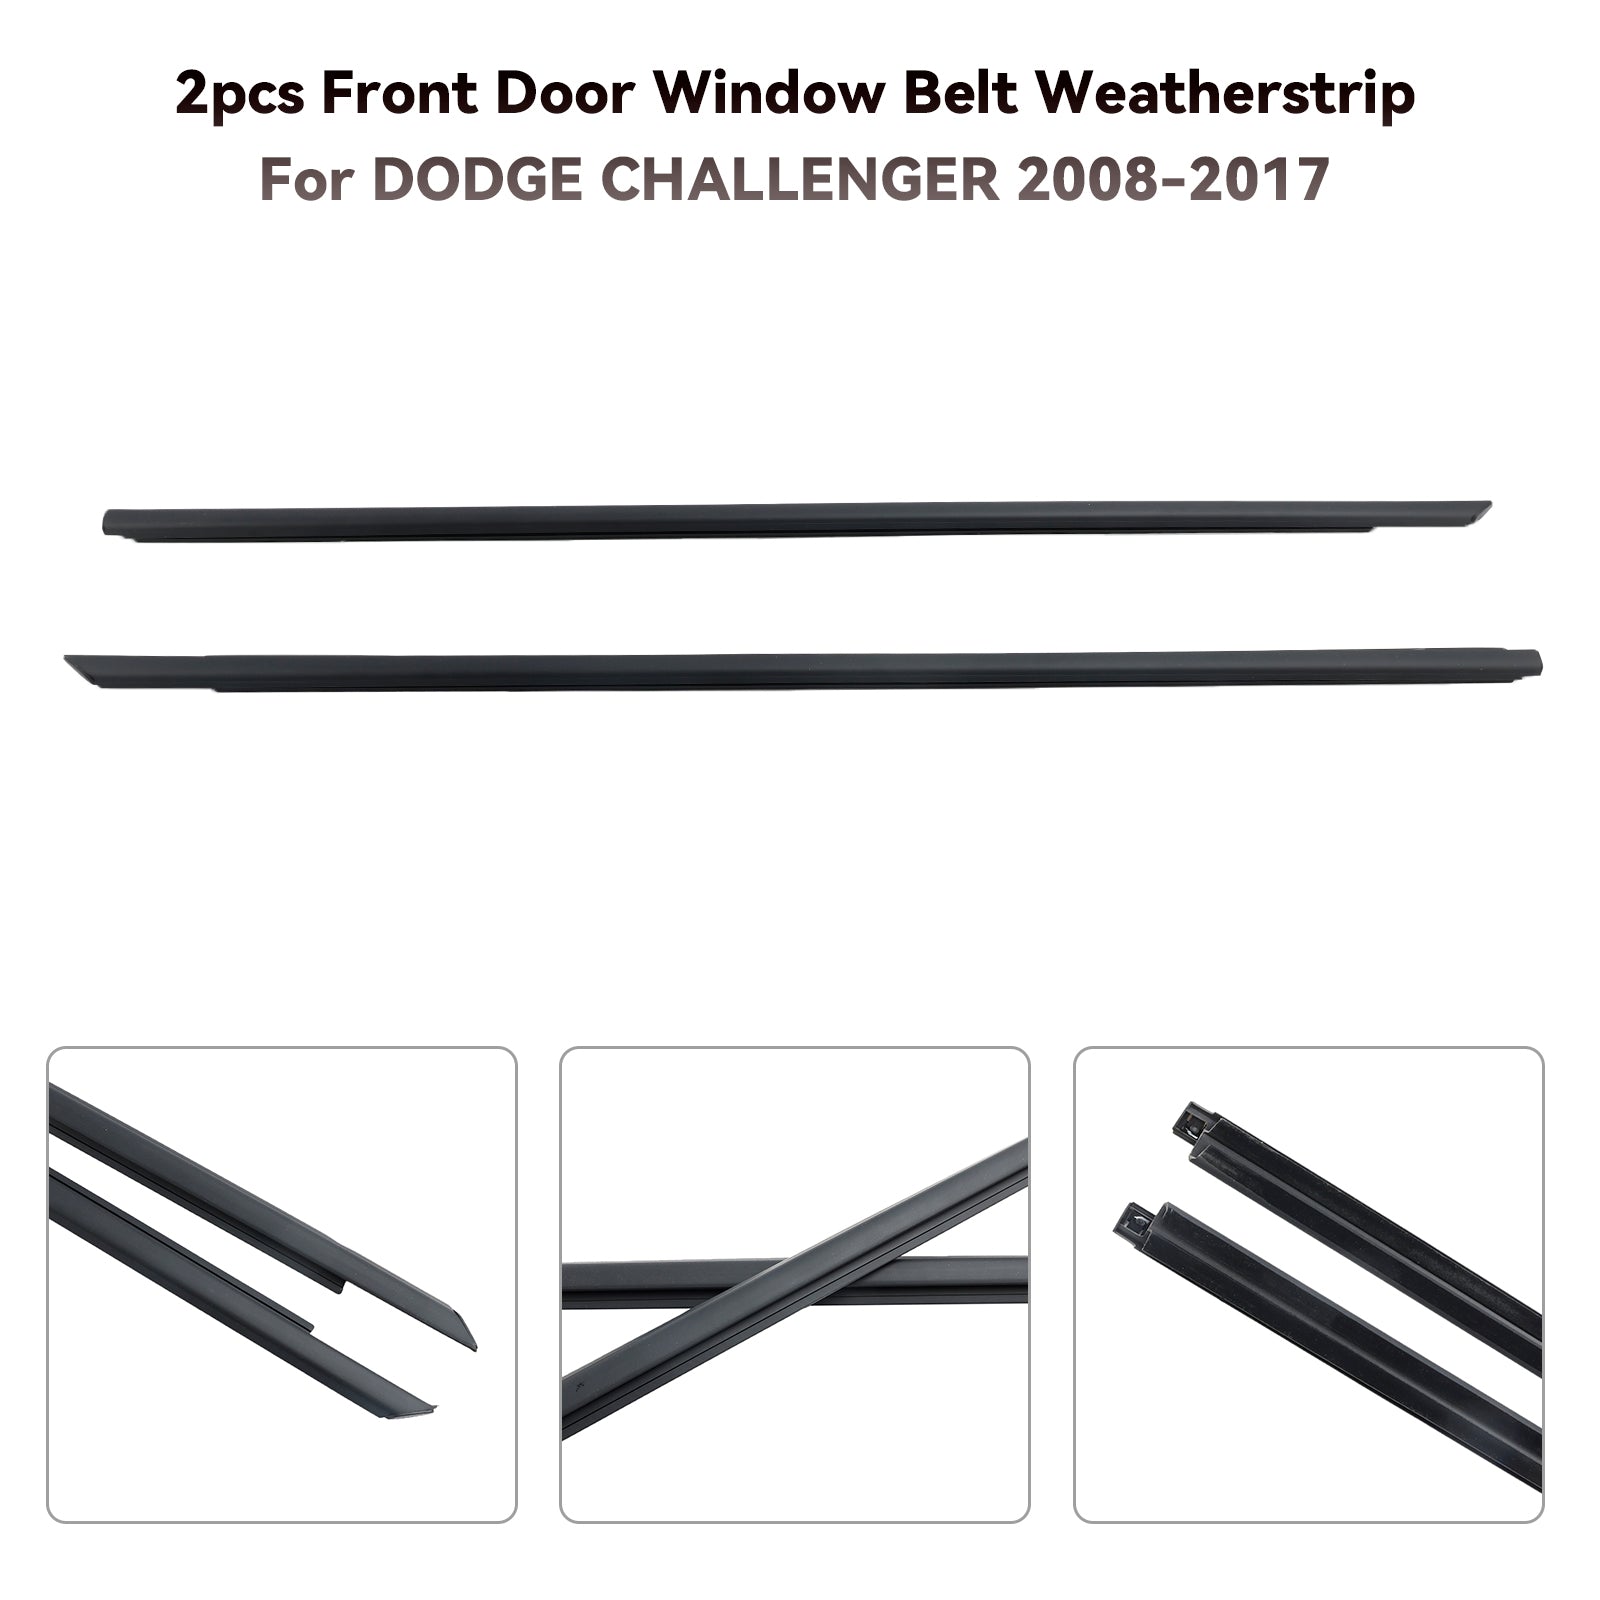 2008-2017 DODGE CHALLENGER 2pcs Front Door Window Belt Weatherstrip